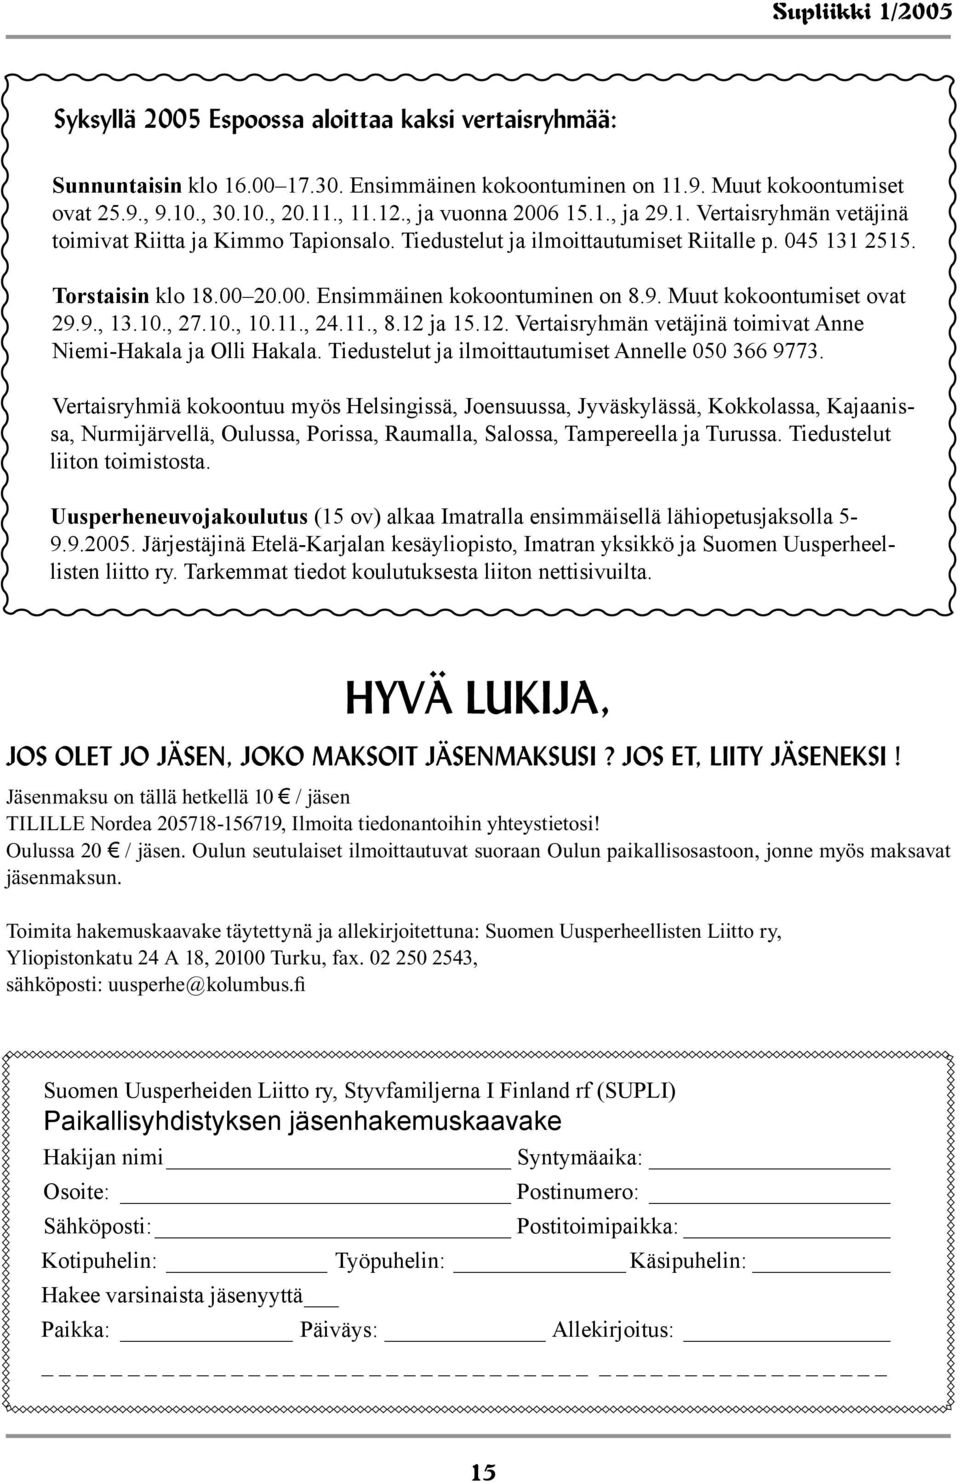 Muut kokoontumiset ovat 29.9., 13.10., 27.10., 10.11., 24.11., 8.12 ja 15.12. Vertaisryhmän vetäjinä toimivat Anne Niemi-Hakala ja Olli Hakala. Tiedustelut ja ilmoittautumiset Annelle 050 366 9773.